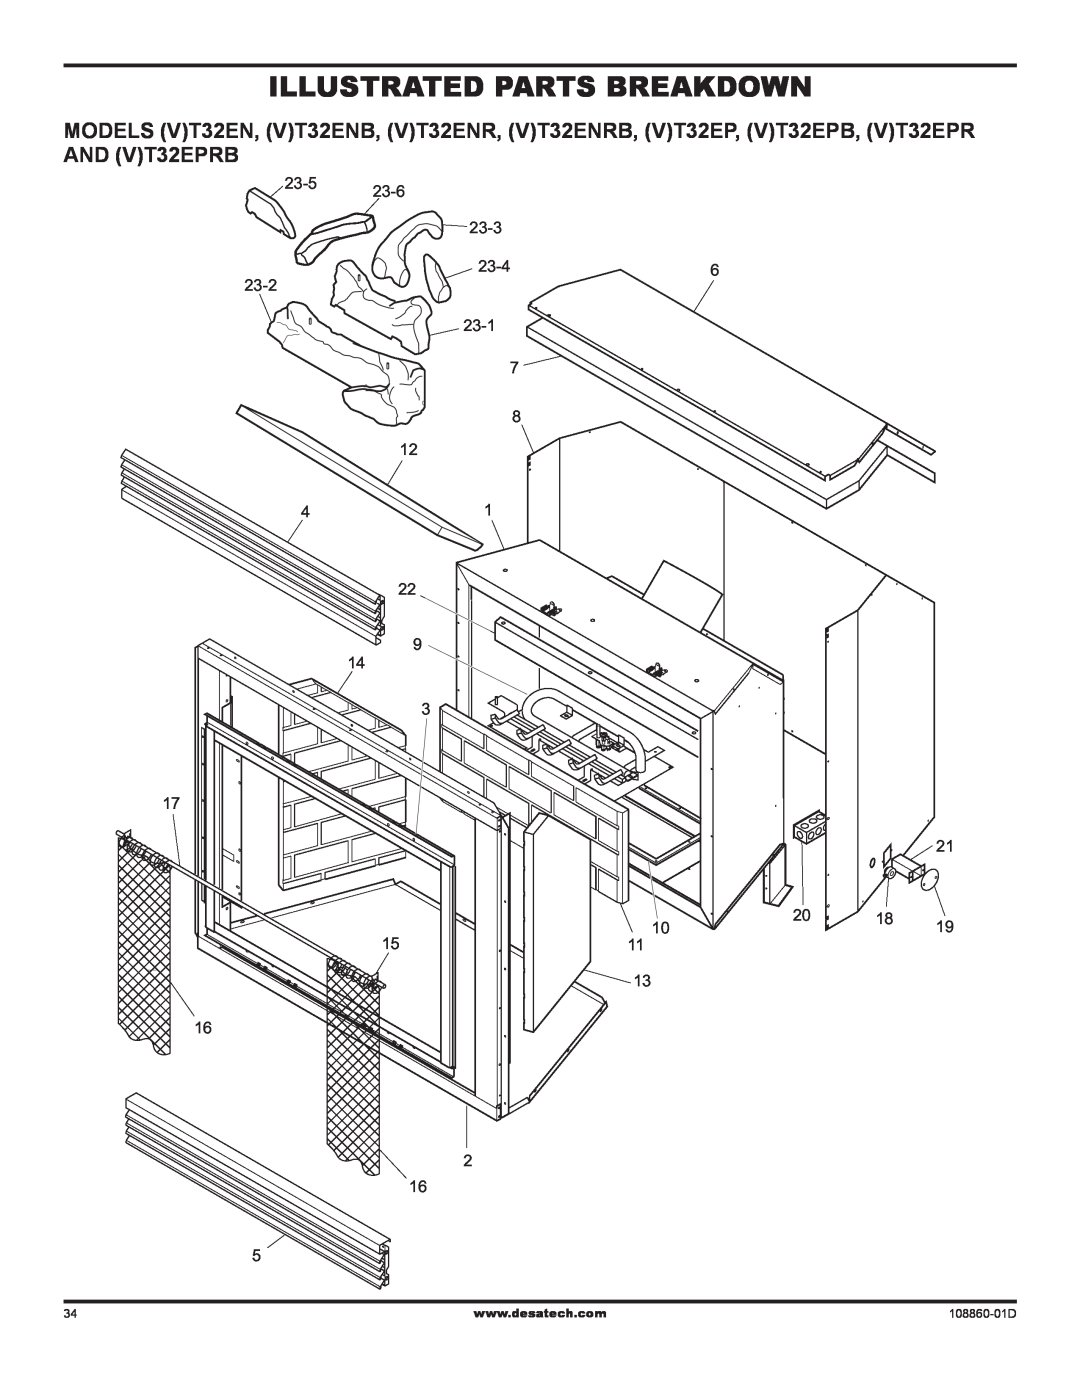 Desa (V)T32EN installation manual Illustrated Parts Breakdown, 108860-01D 